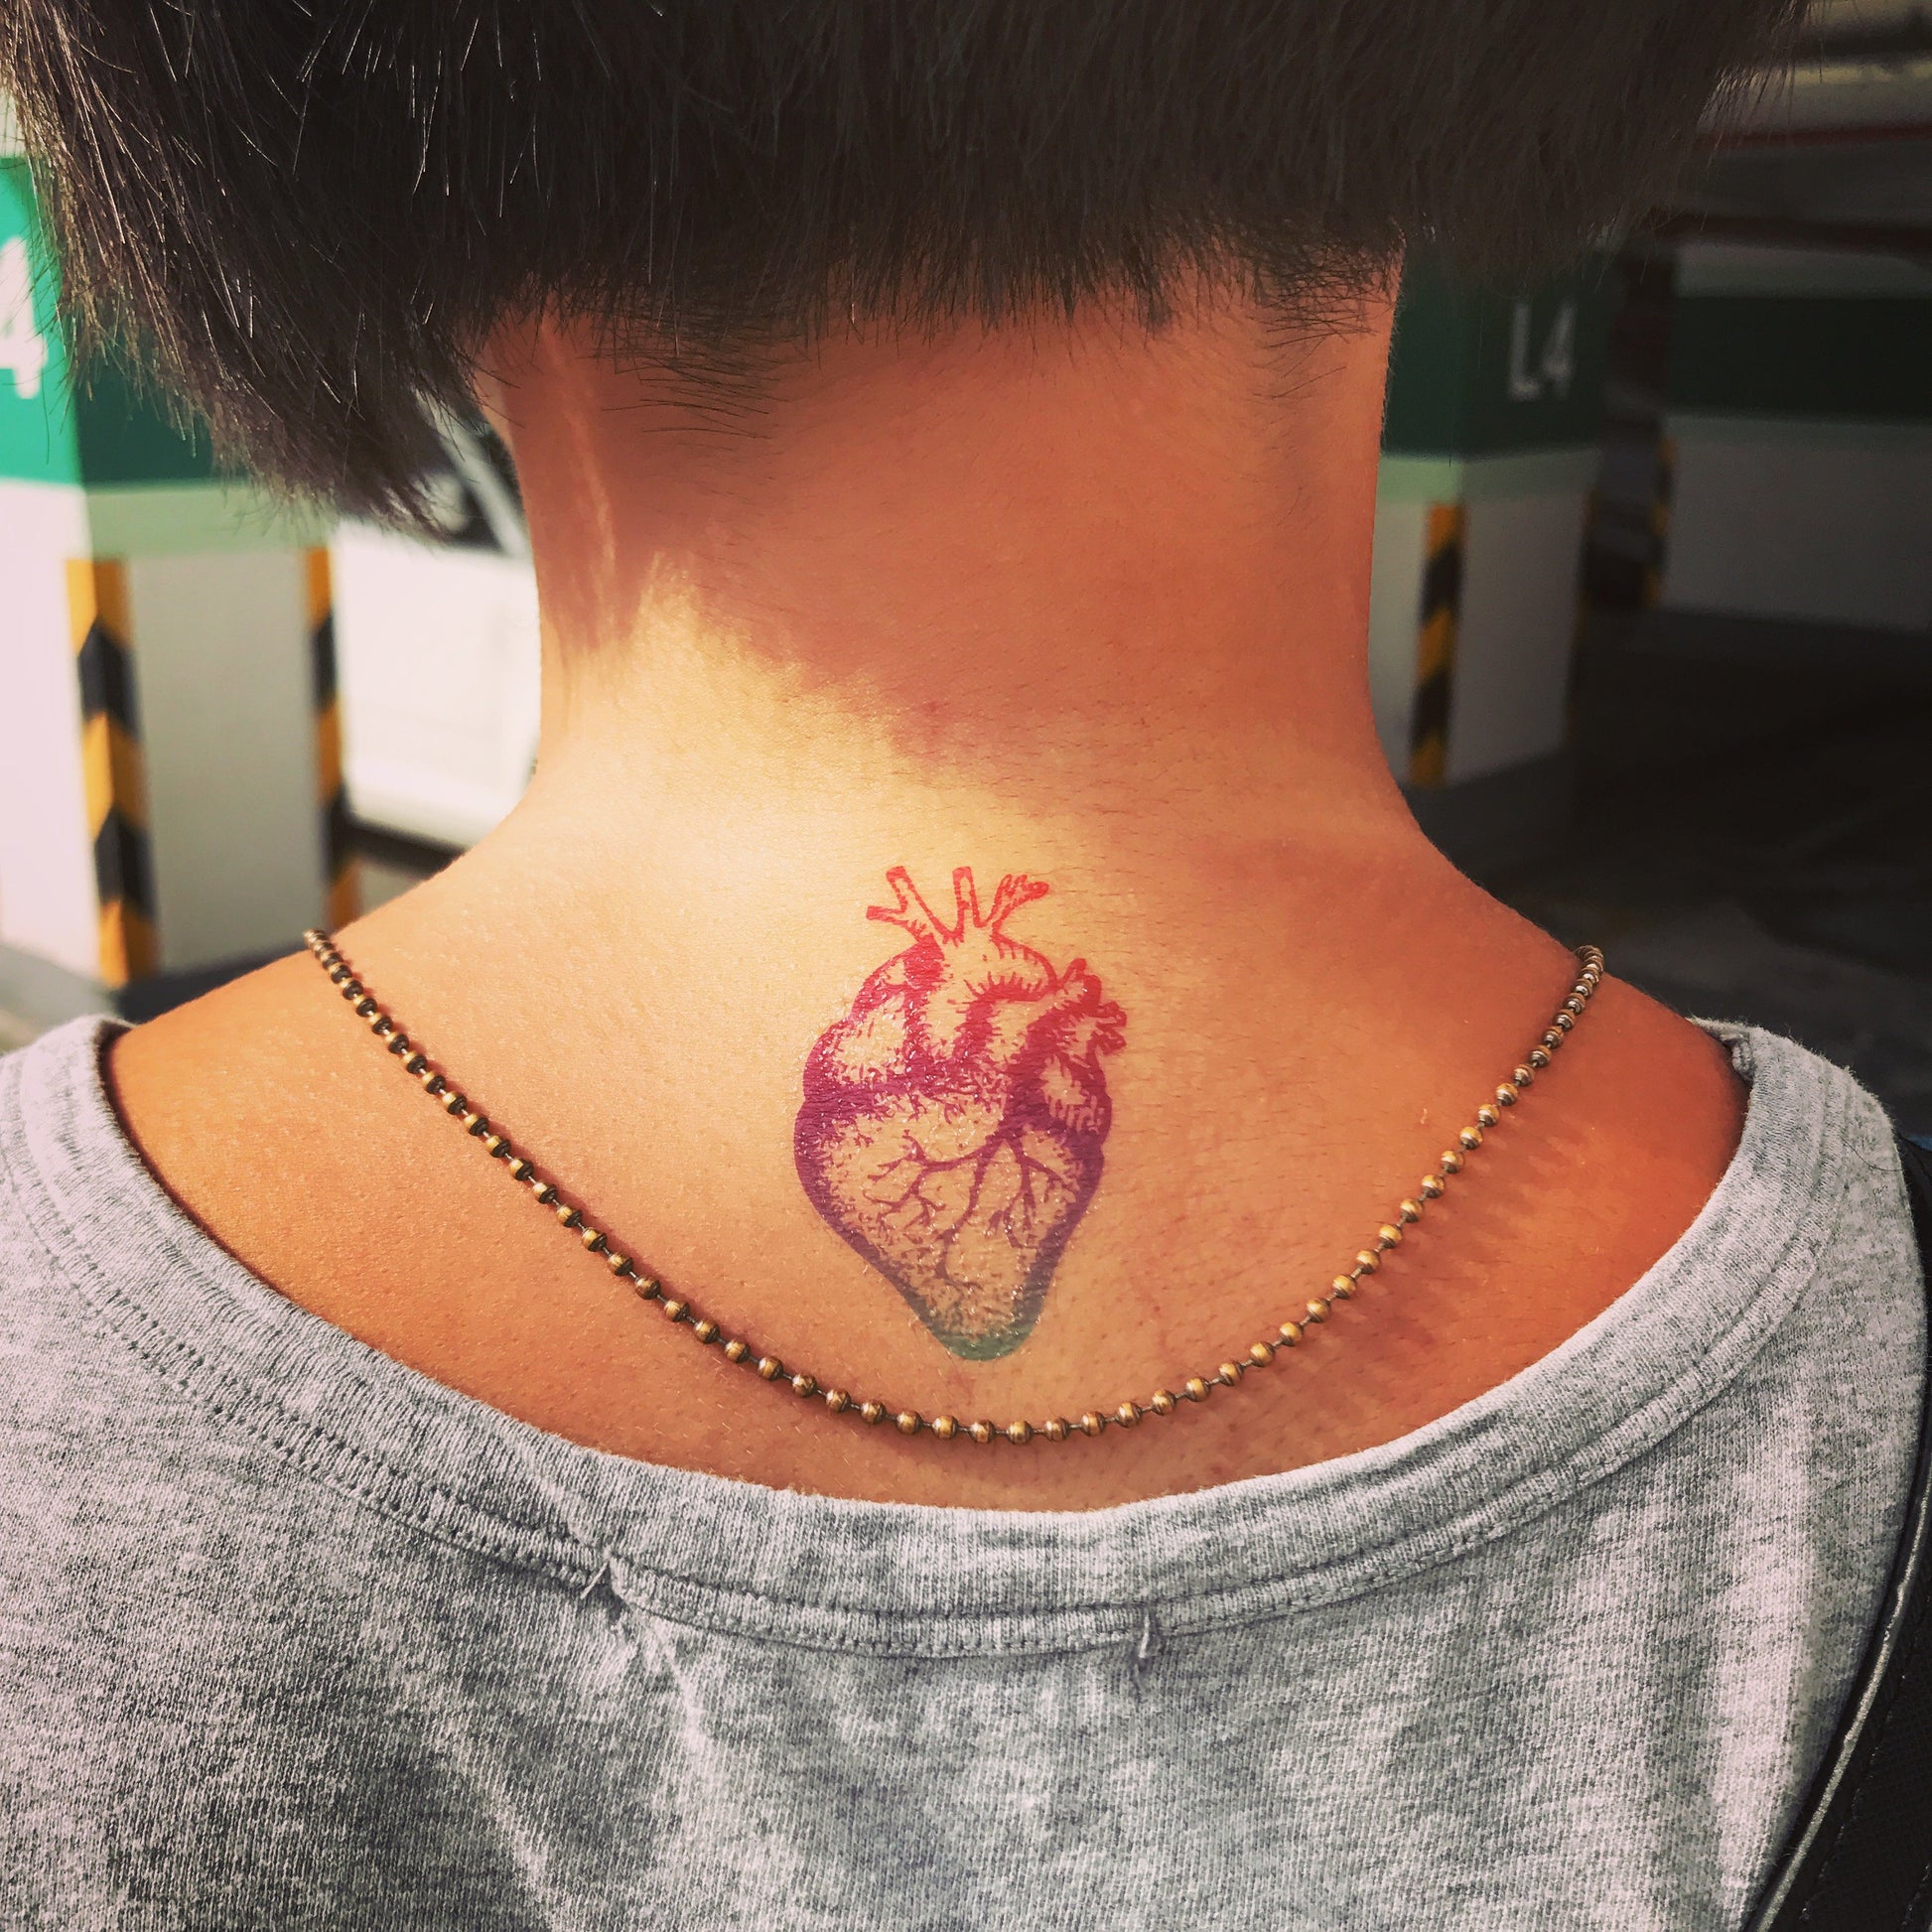 Small Hearts Temporary Tattoo